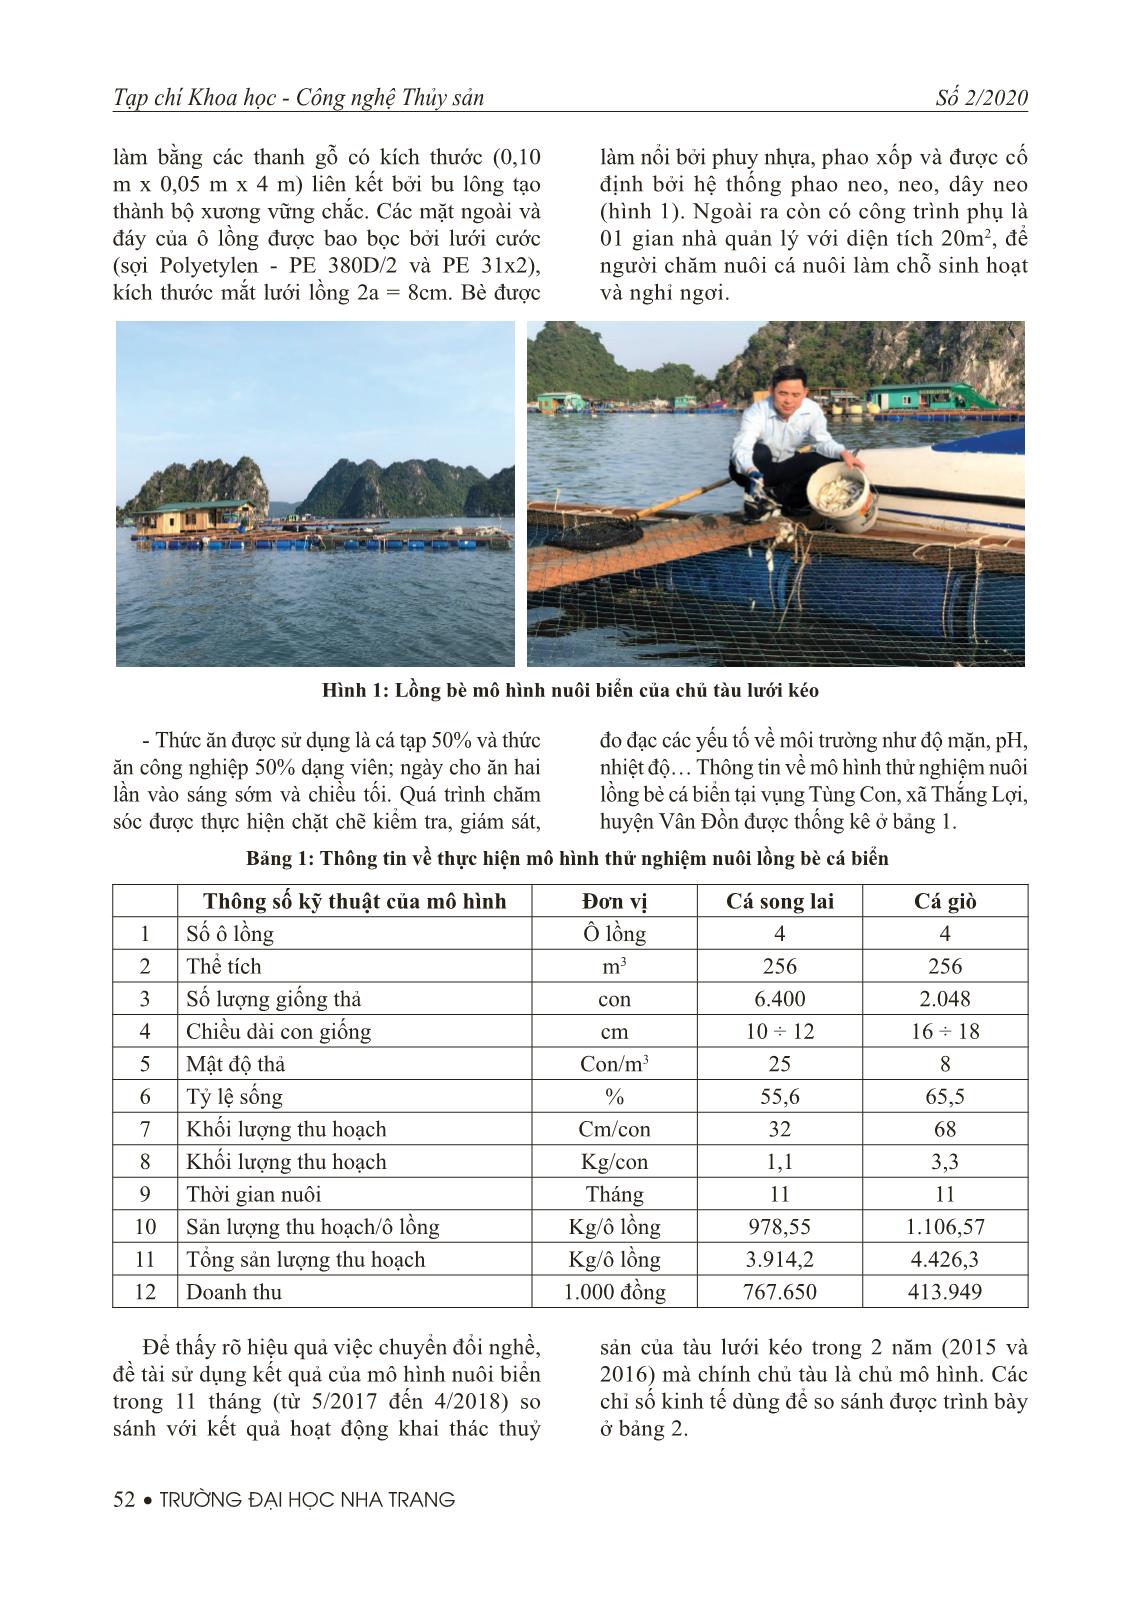 Kết quả nghiên cứu xây dựng giải pháp chuyển đổi nghề lưới kéo của huyện Vân Đồn, tỉnh Quảng Ninh khai thác thuỷ sản tại vùng biển ven bờ sang nghề nuôi biển trang 4